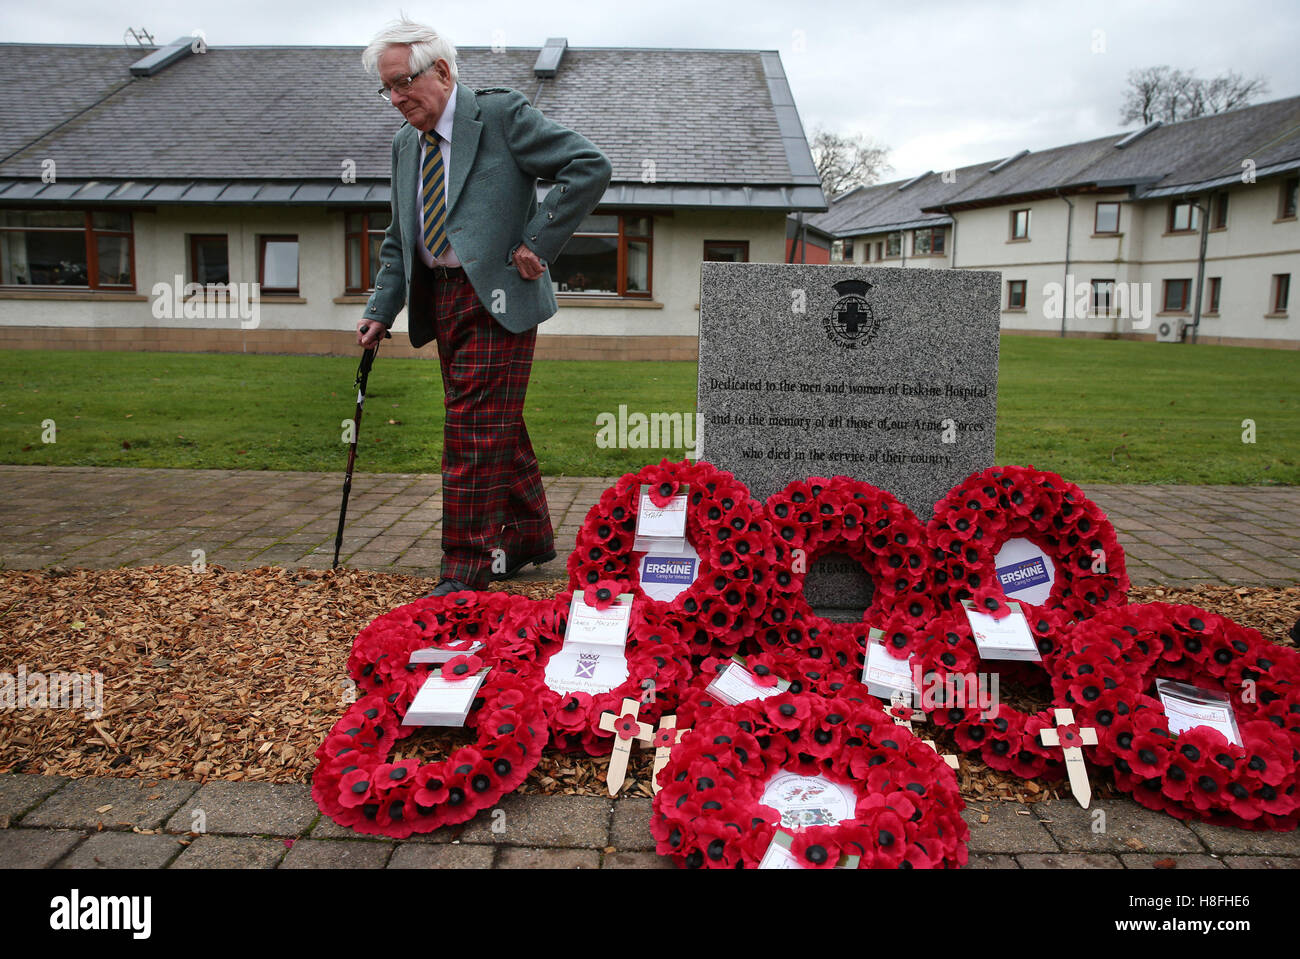 Peter Knowles vétéran de la Royal Army Service Corps vues une pierre qui a déposé une couronne au nom de la Erskine Anciens combattants lors d'un service du souvenir le jour de l'Armistice à Erskine Accueil à Bishopton, en Écosse. Banque D'Images